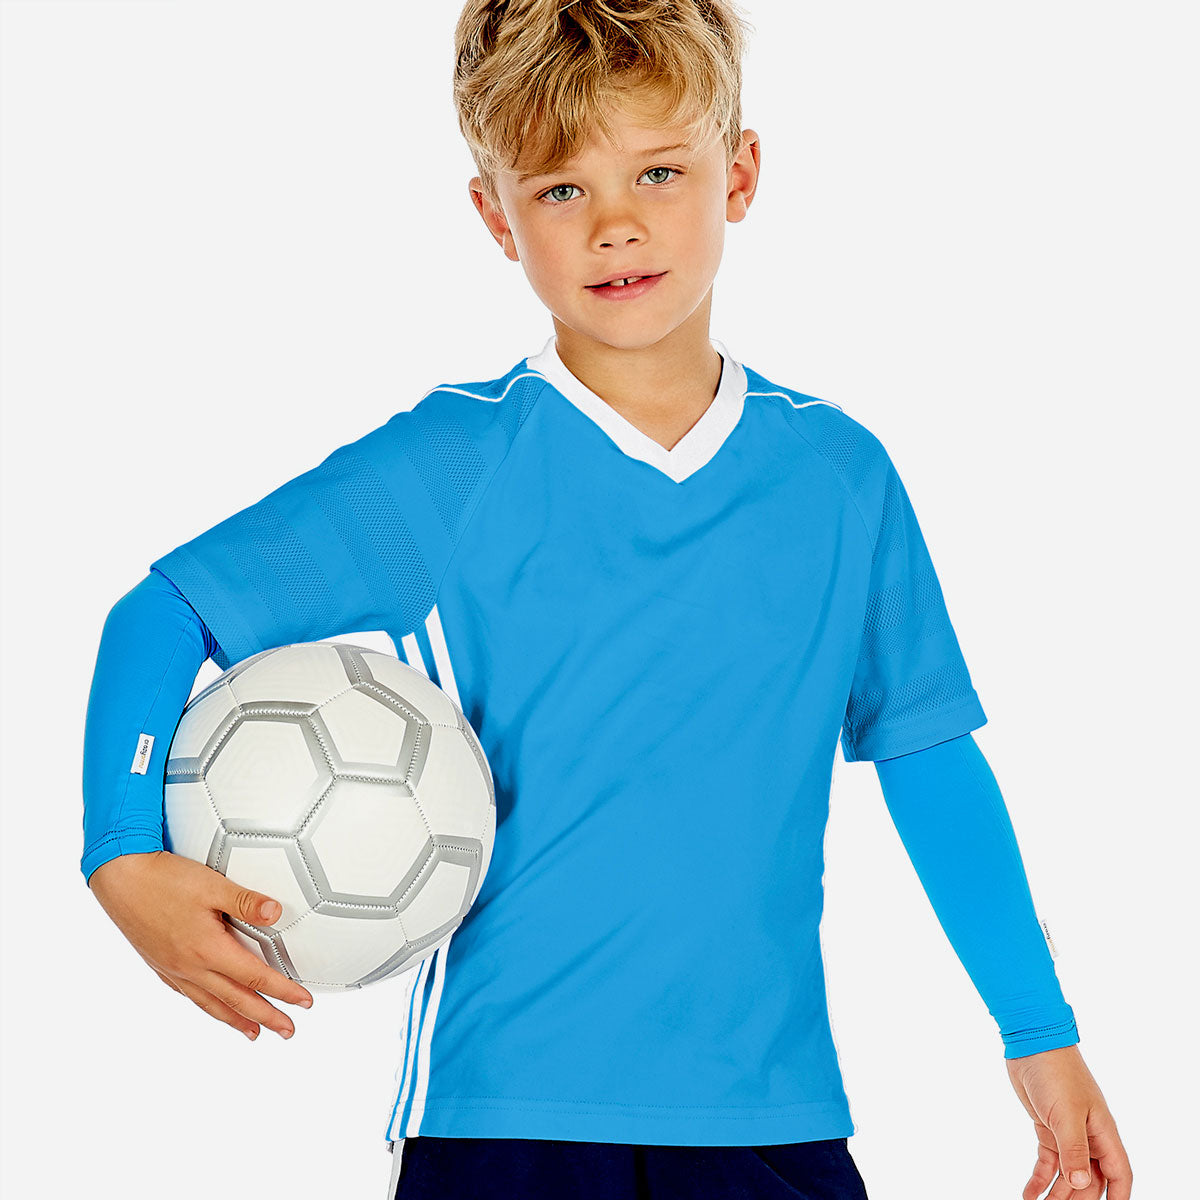 Sun protective sleeves for children - Ocean Blue design